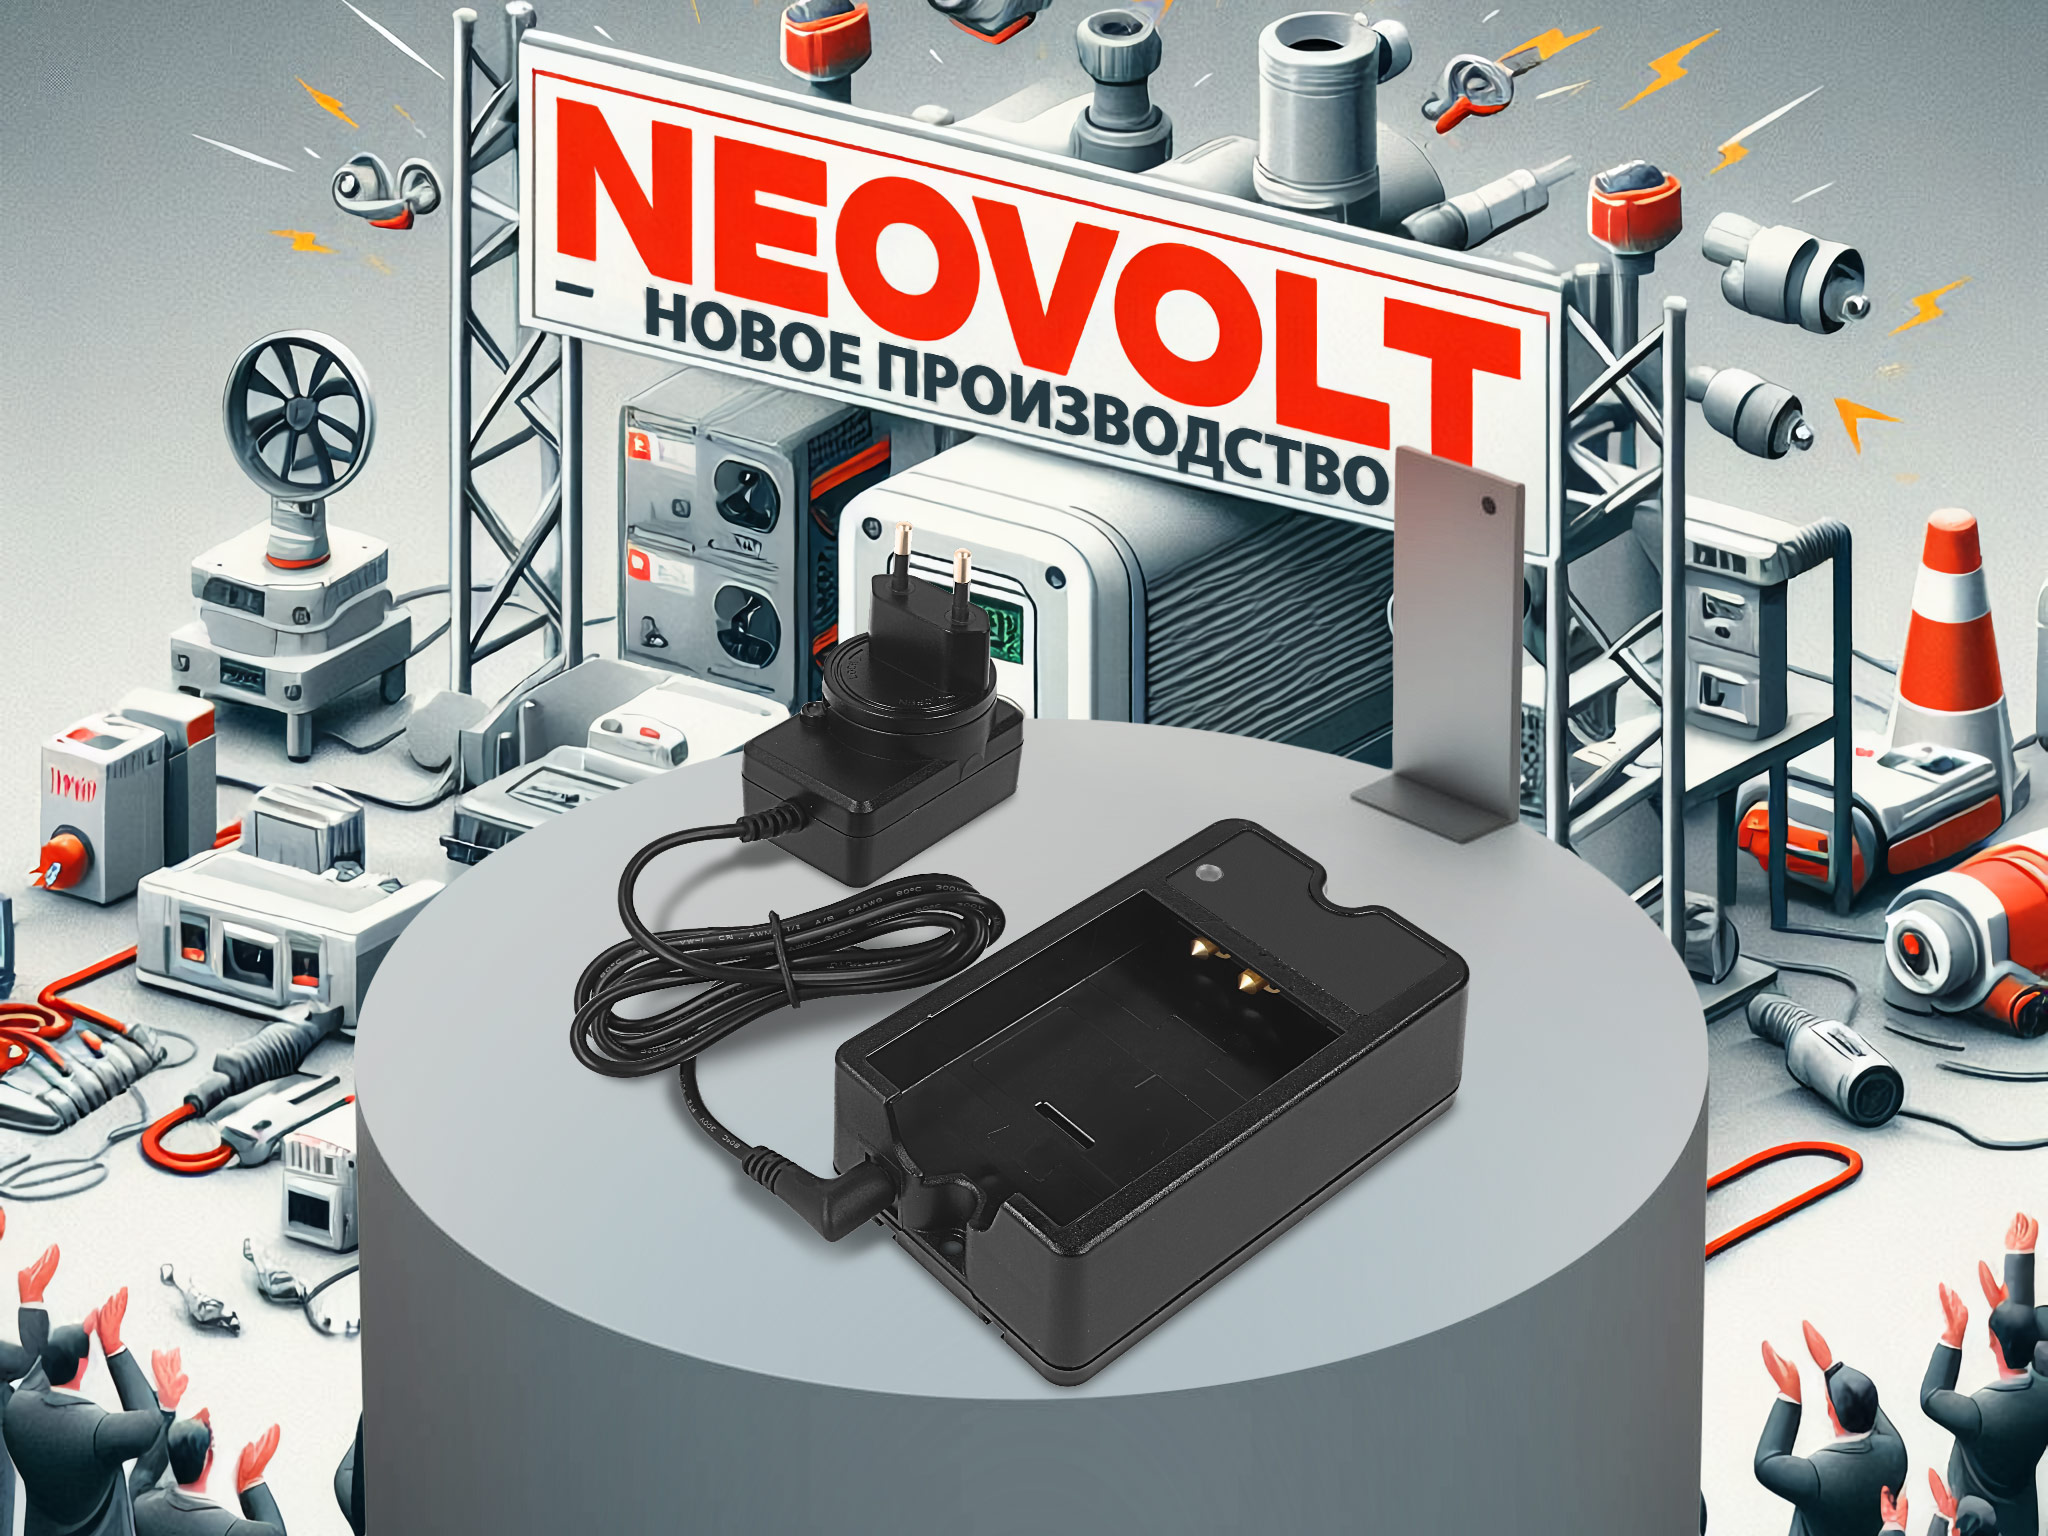 Запускаем производство зарядных устройств Neovolt для медицинской, измерительной, промышленной техники 